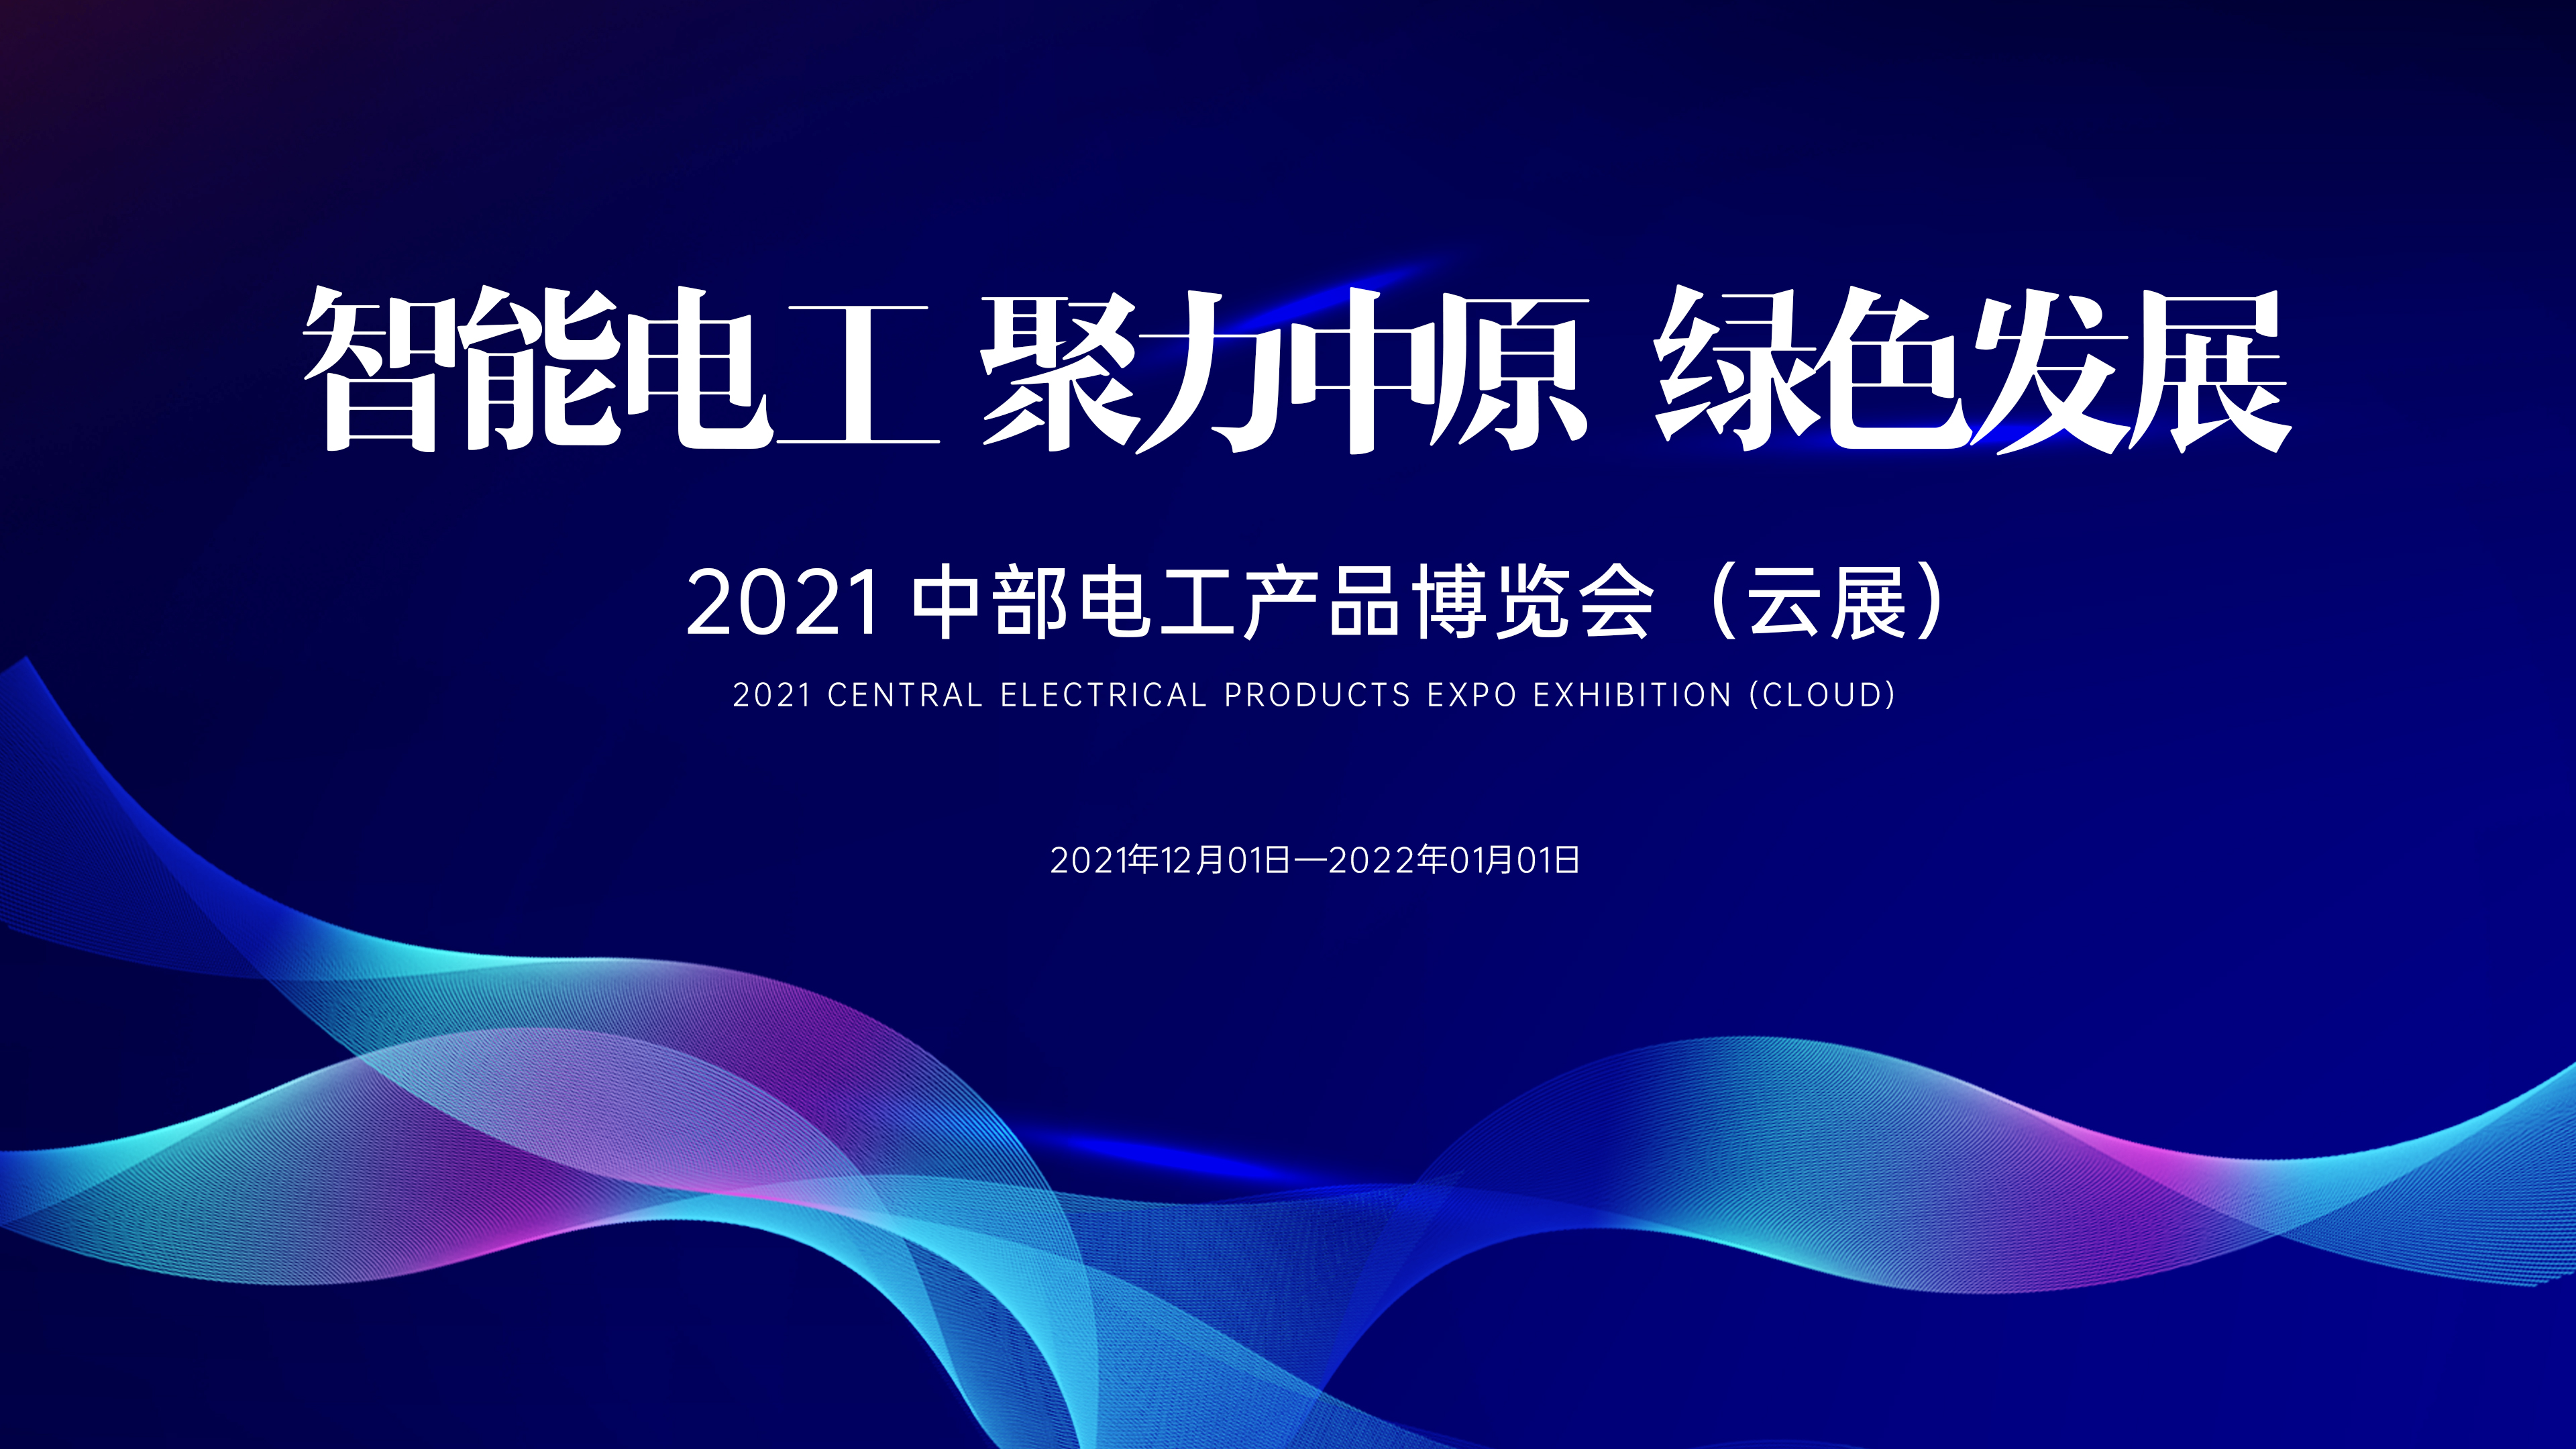 就在明天！2021中部电工产品博览会（云展）震撼来袭！线上直播与云展入口↘